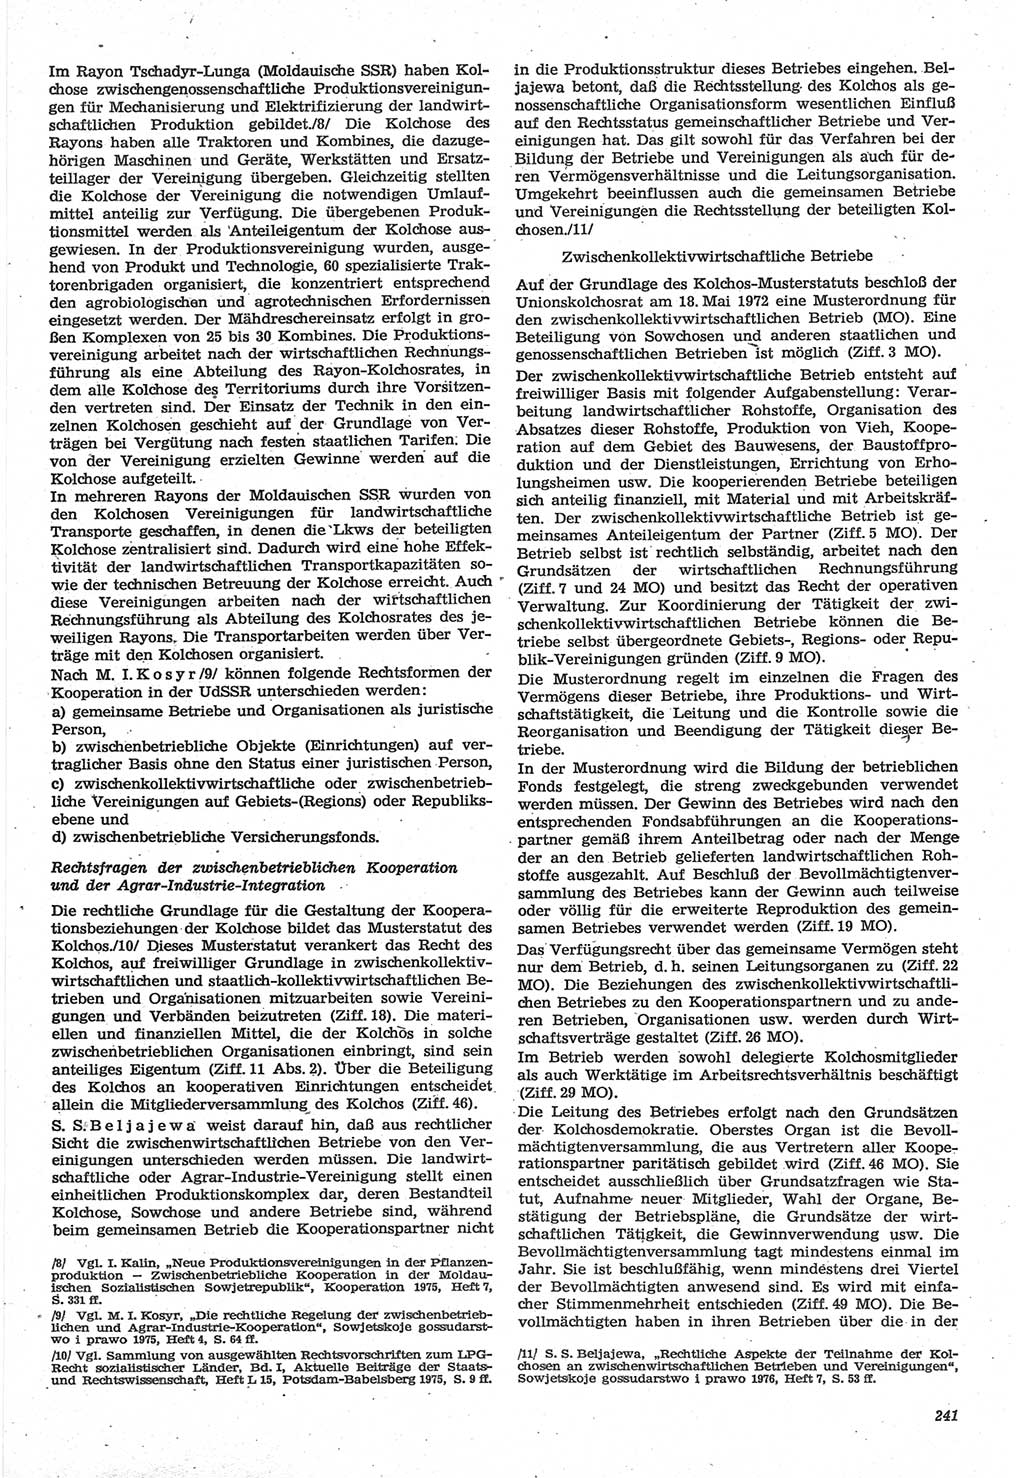 Neue Justiz (NJ), Zeitschrift für Recht und Rechtswissenschaft-Zeitschrift, sozialistisches Recht und Gesetzlichkeit, 31. Jahrgang 1977, Seite 241 (NJ DDR 1977, S. 241)